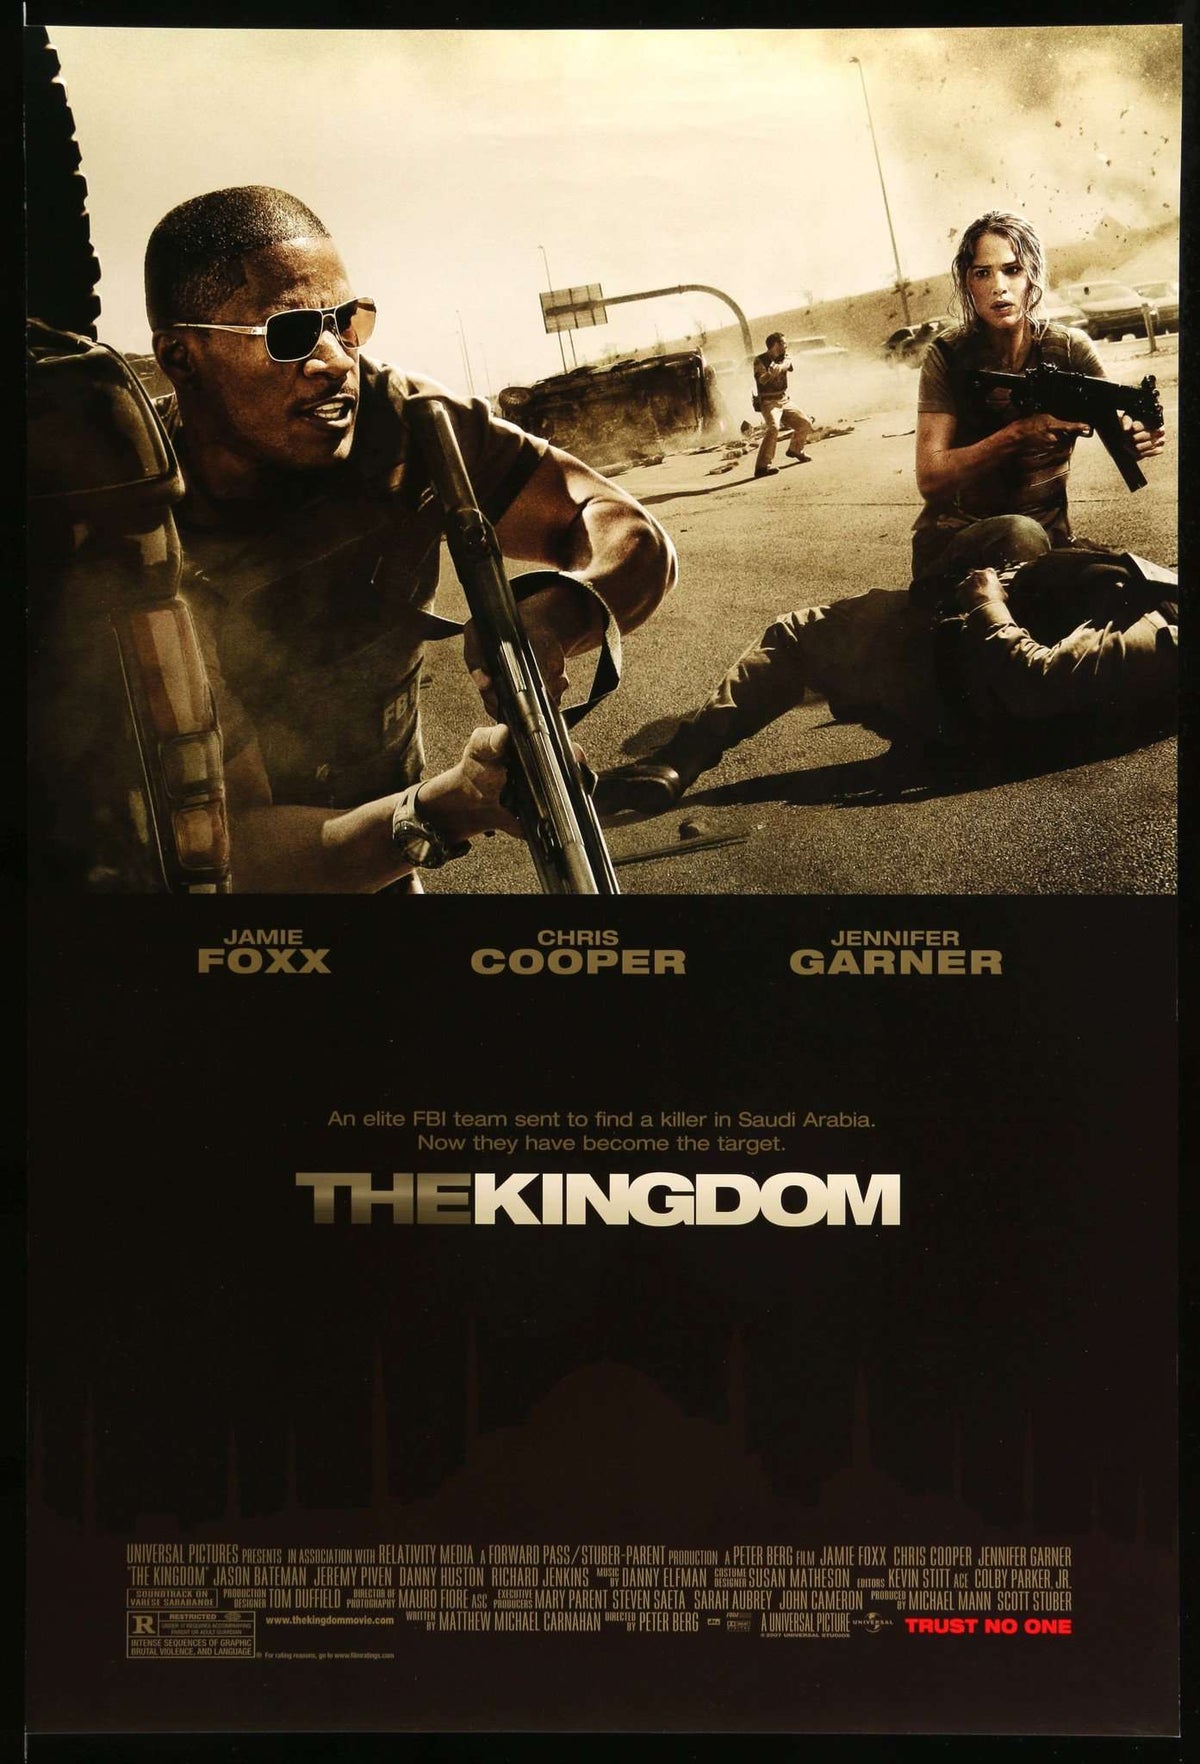 Kingdom (2007) original movie poster for sale at Original Film Art